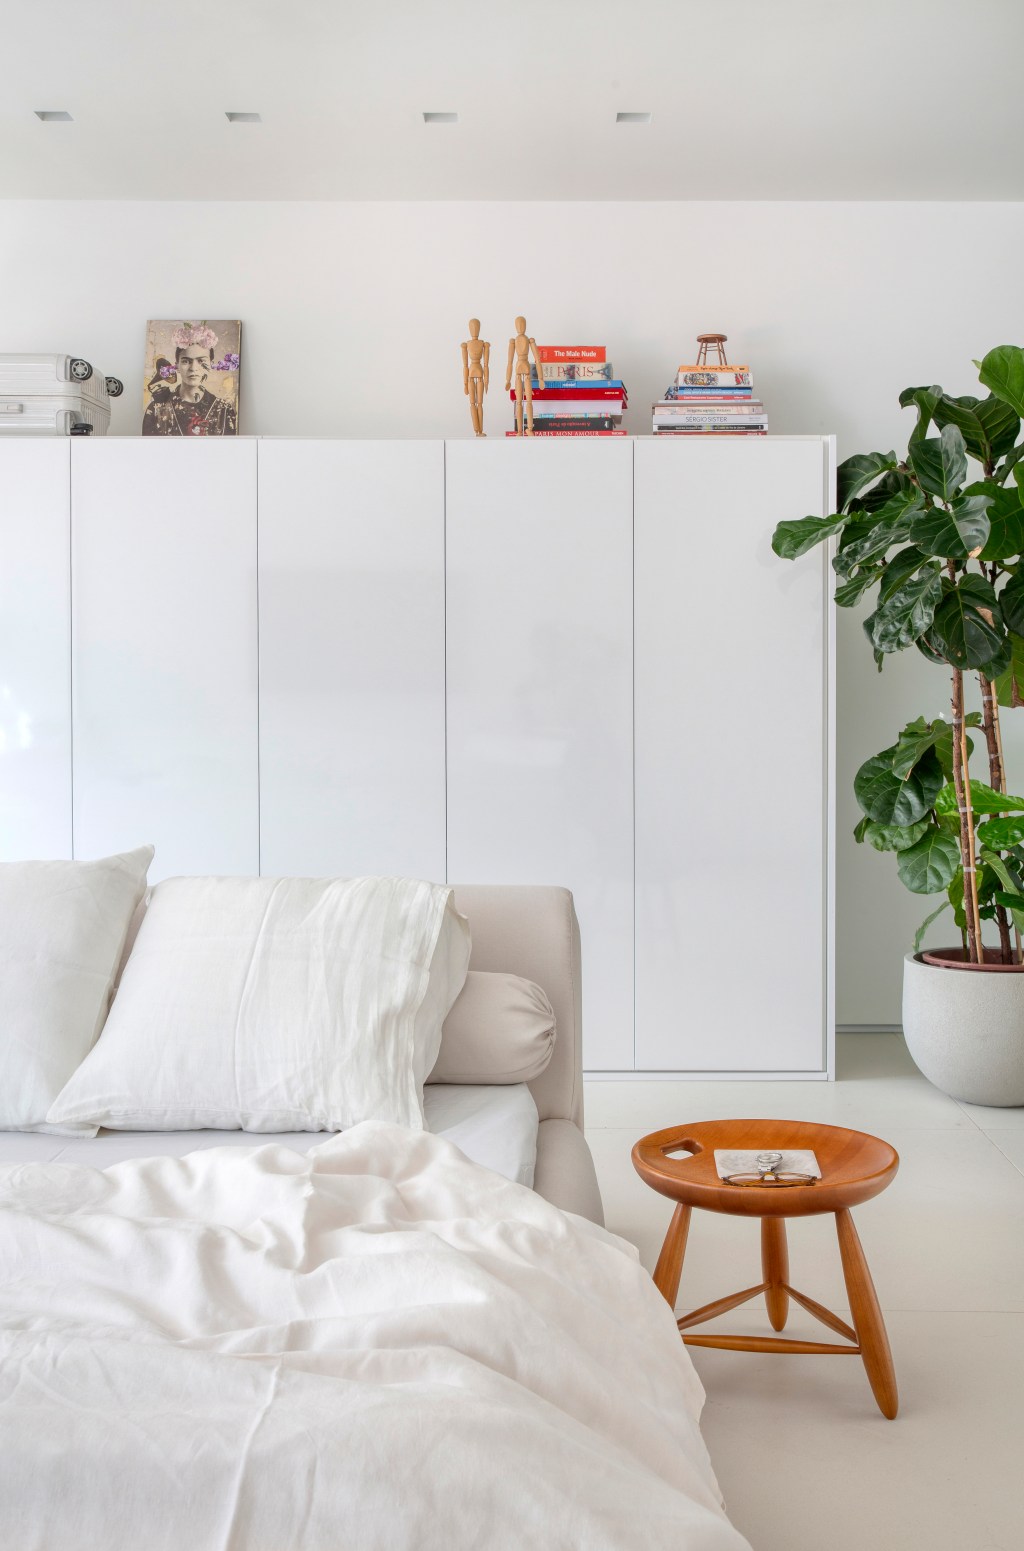 Loft de 40 m² ganha projeto minimalista que une branco e madeira. Projeto de Diego Raposo e Manuela Simas. Na foto, quarto com armário branco e vaso de plantas.